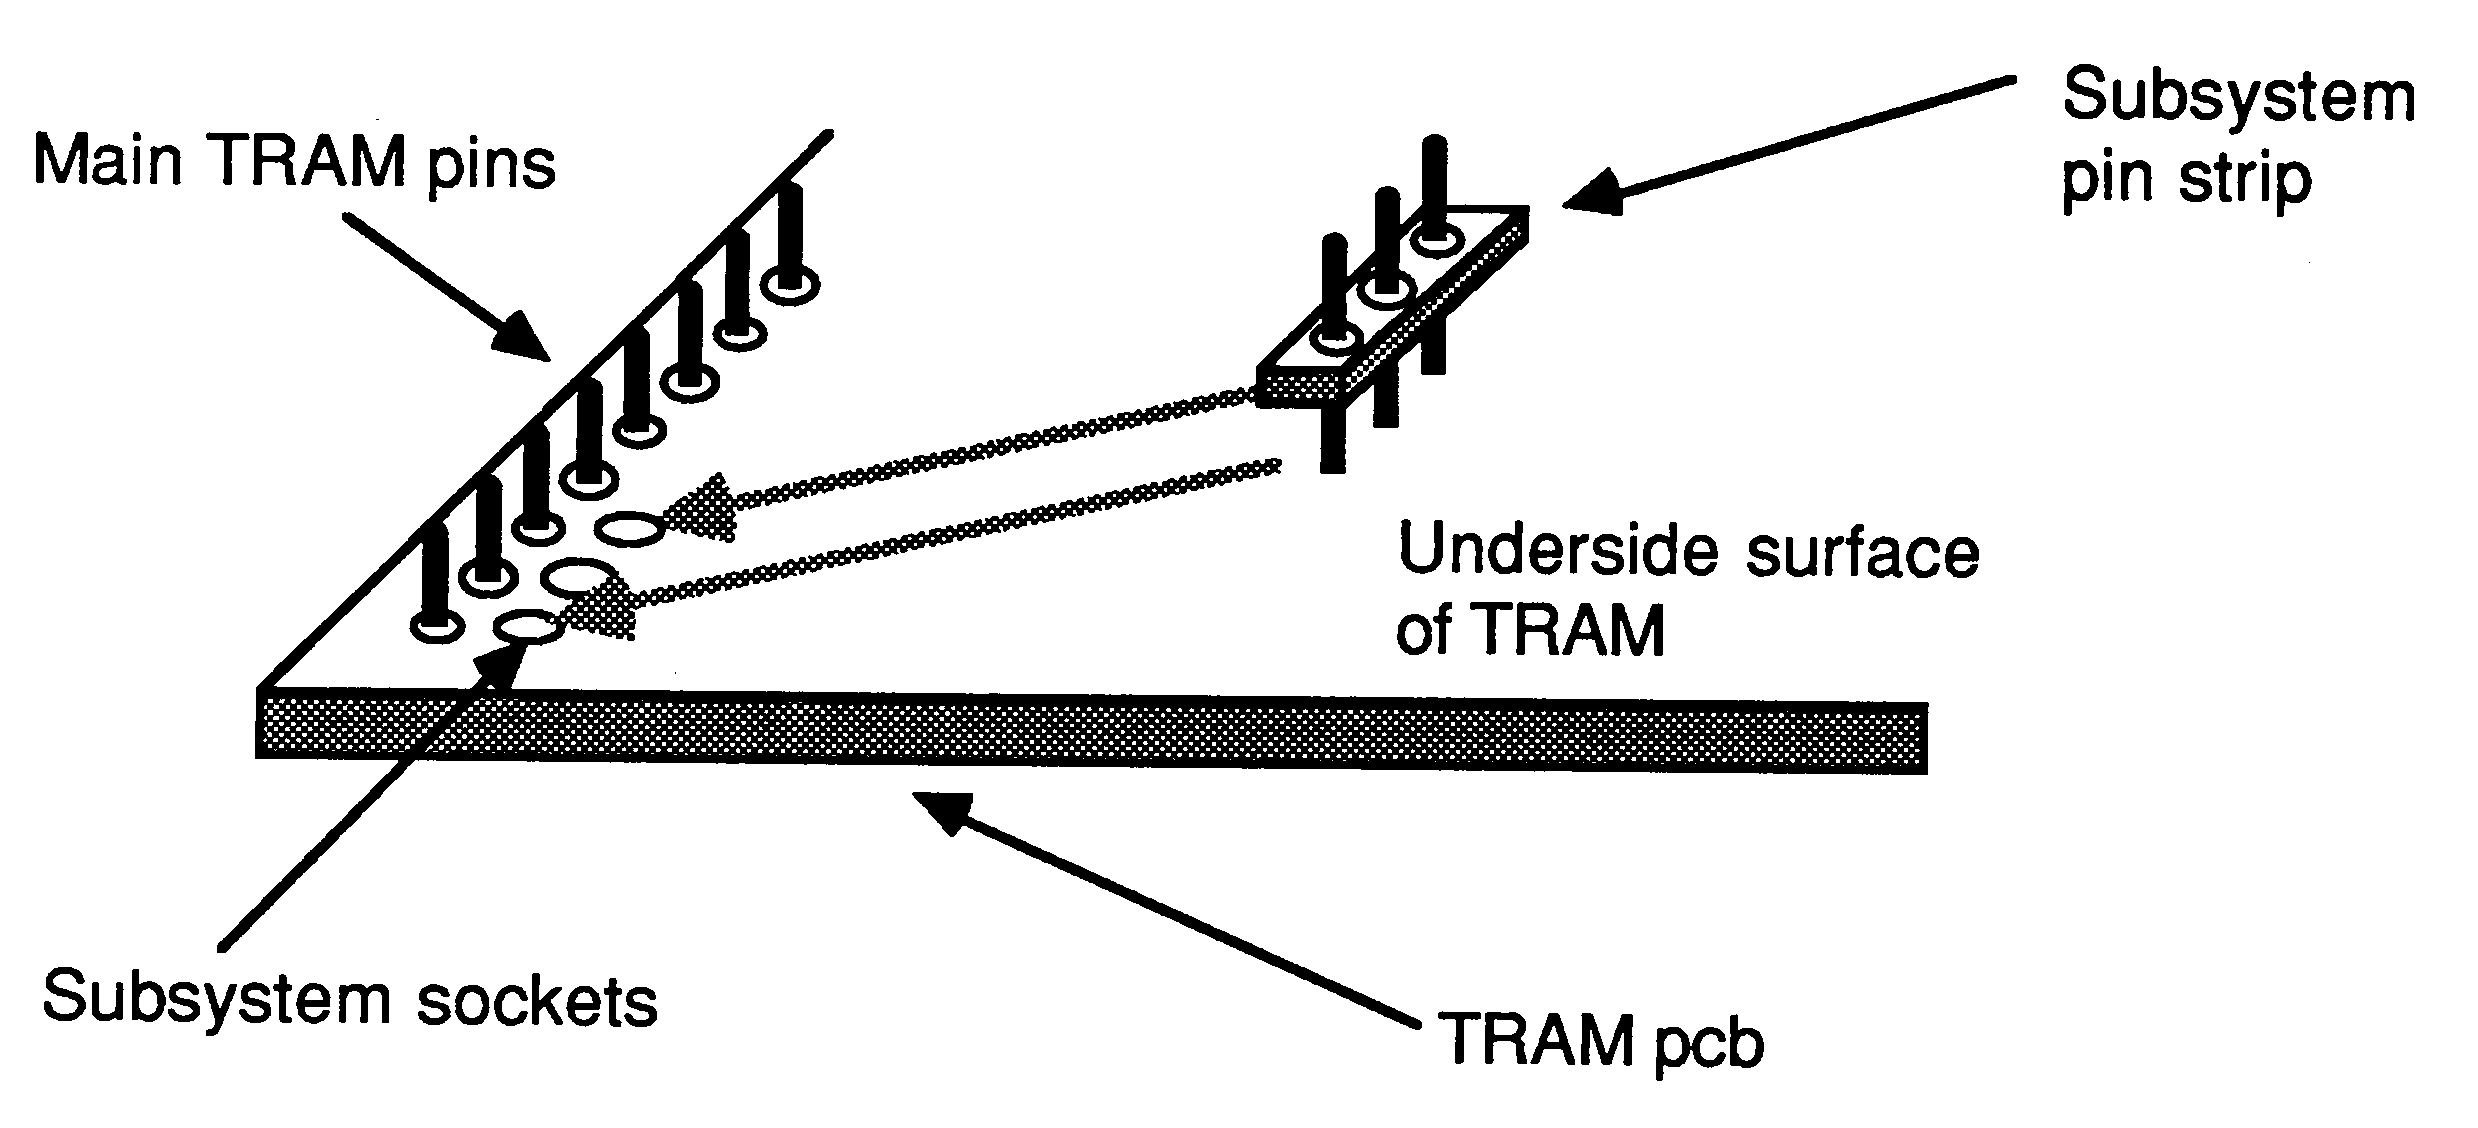 Subsystem pins installation